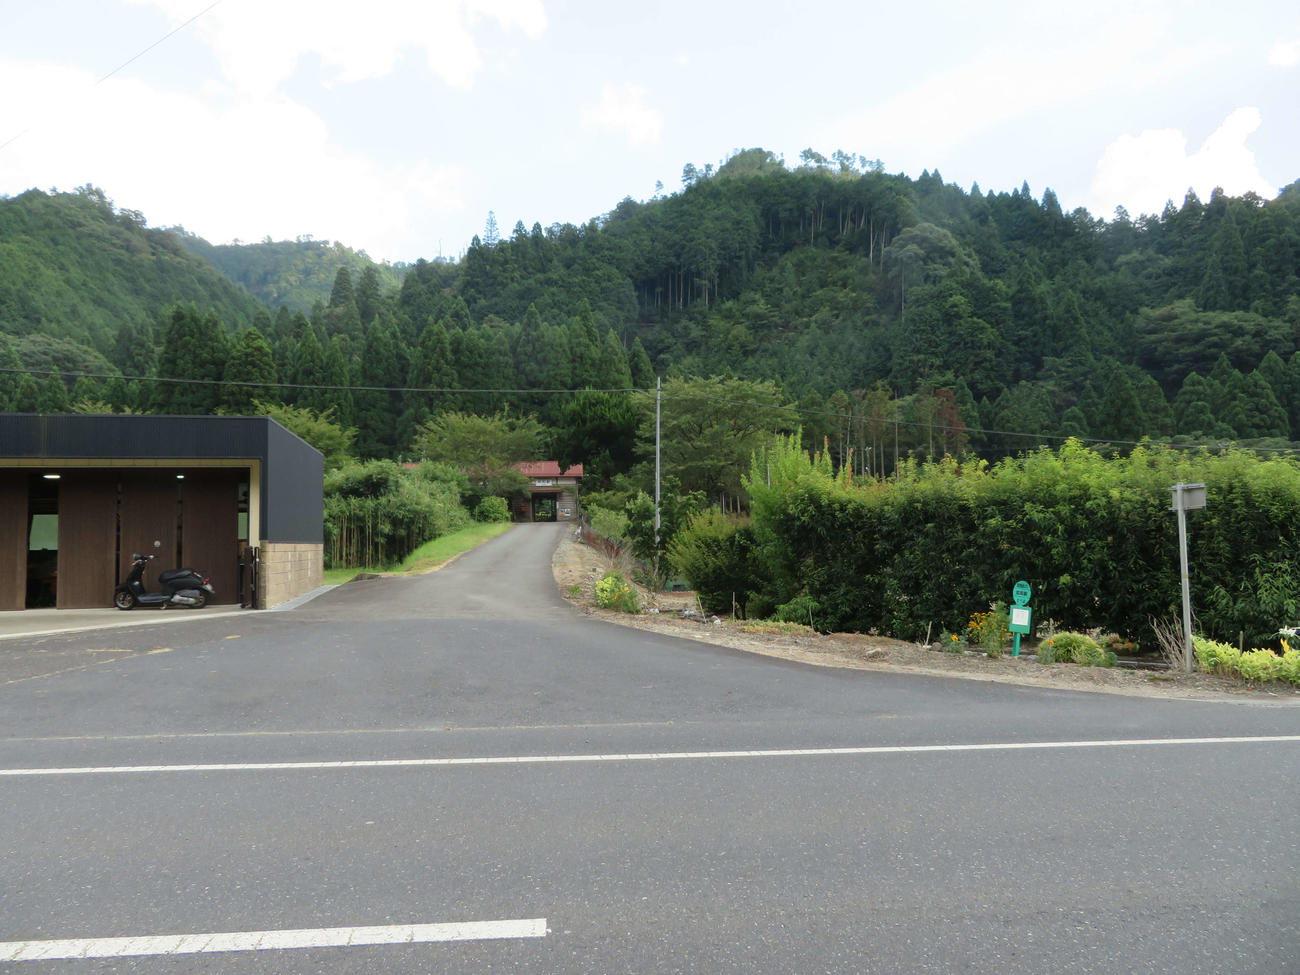 〈10〉知和駅（奥に見える）から県道に降りると向かい車線にバス停はあるが、こちら側はいくら探してもなかった